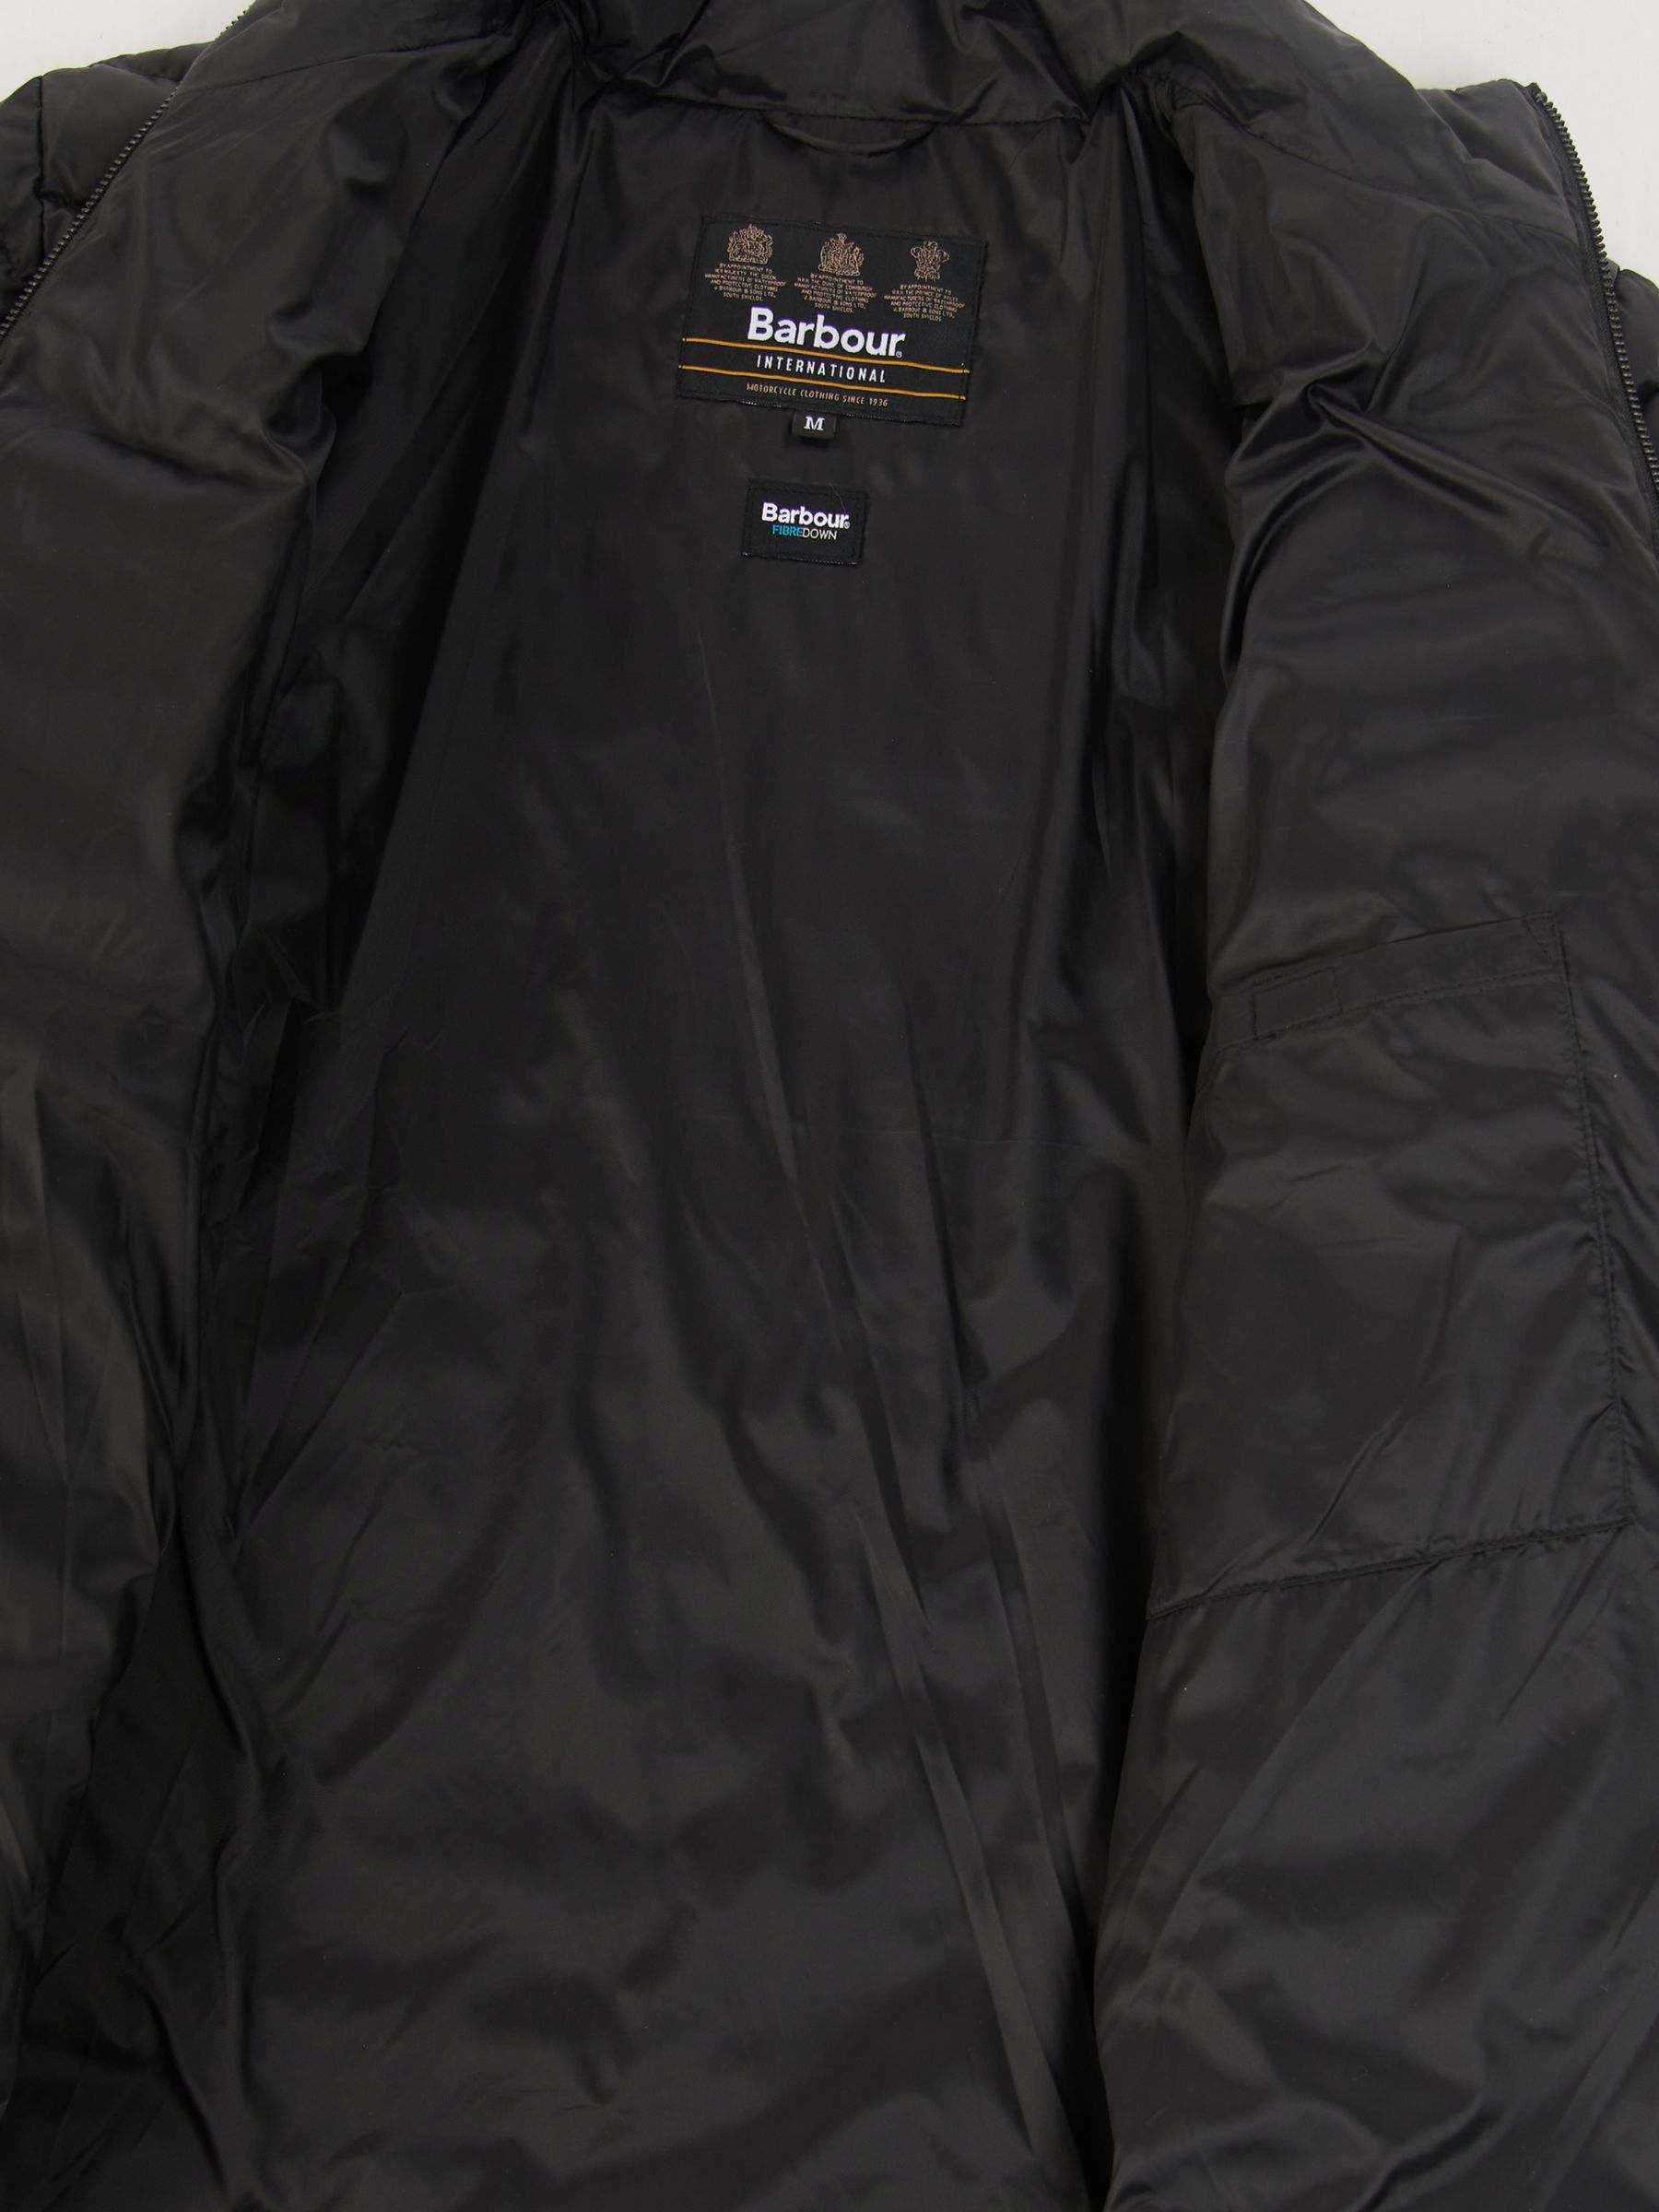 Buy Barbour International Impeller Quilted Jacket Online at johnlewis.com